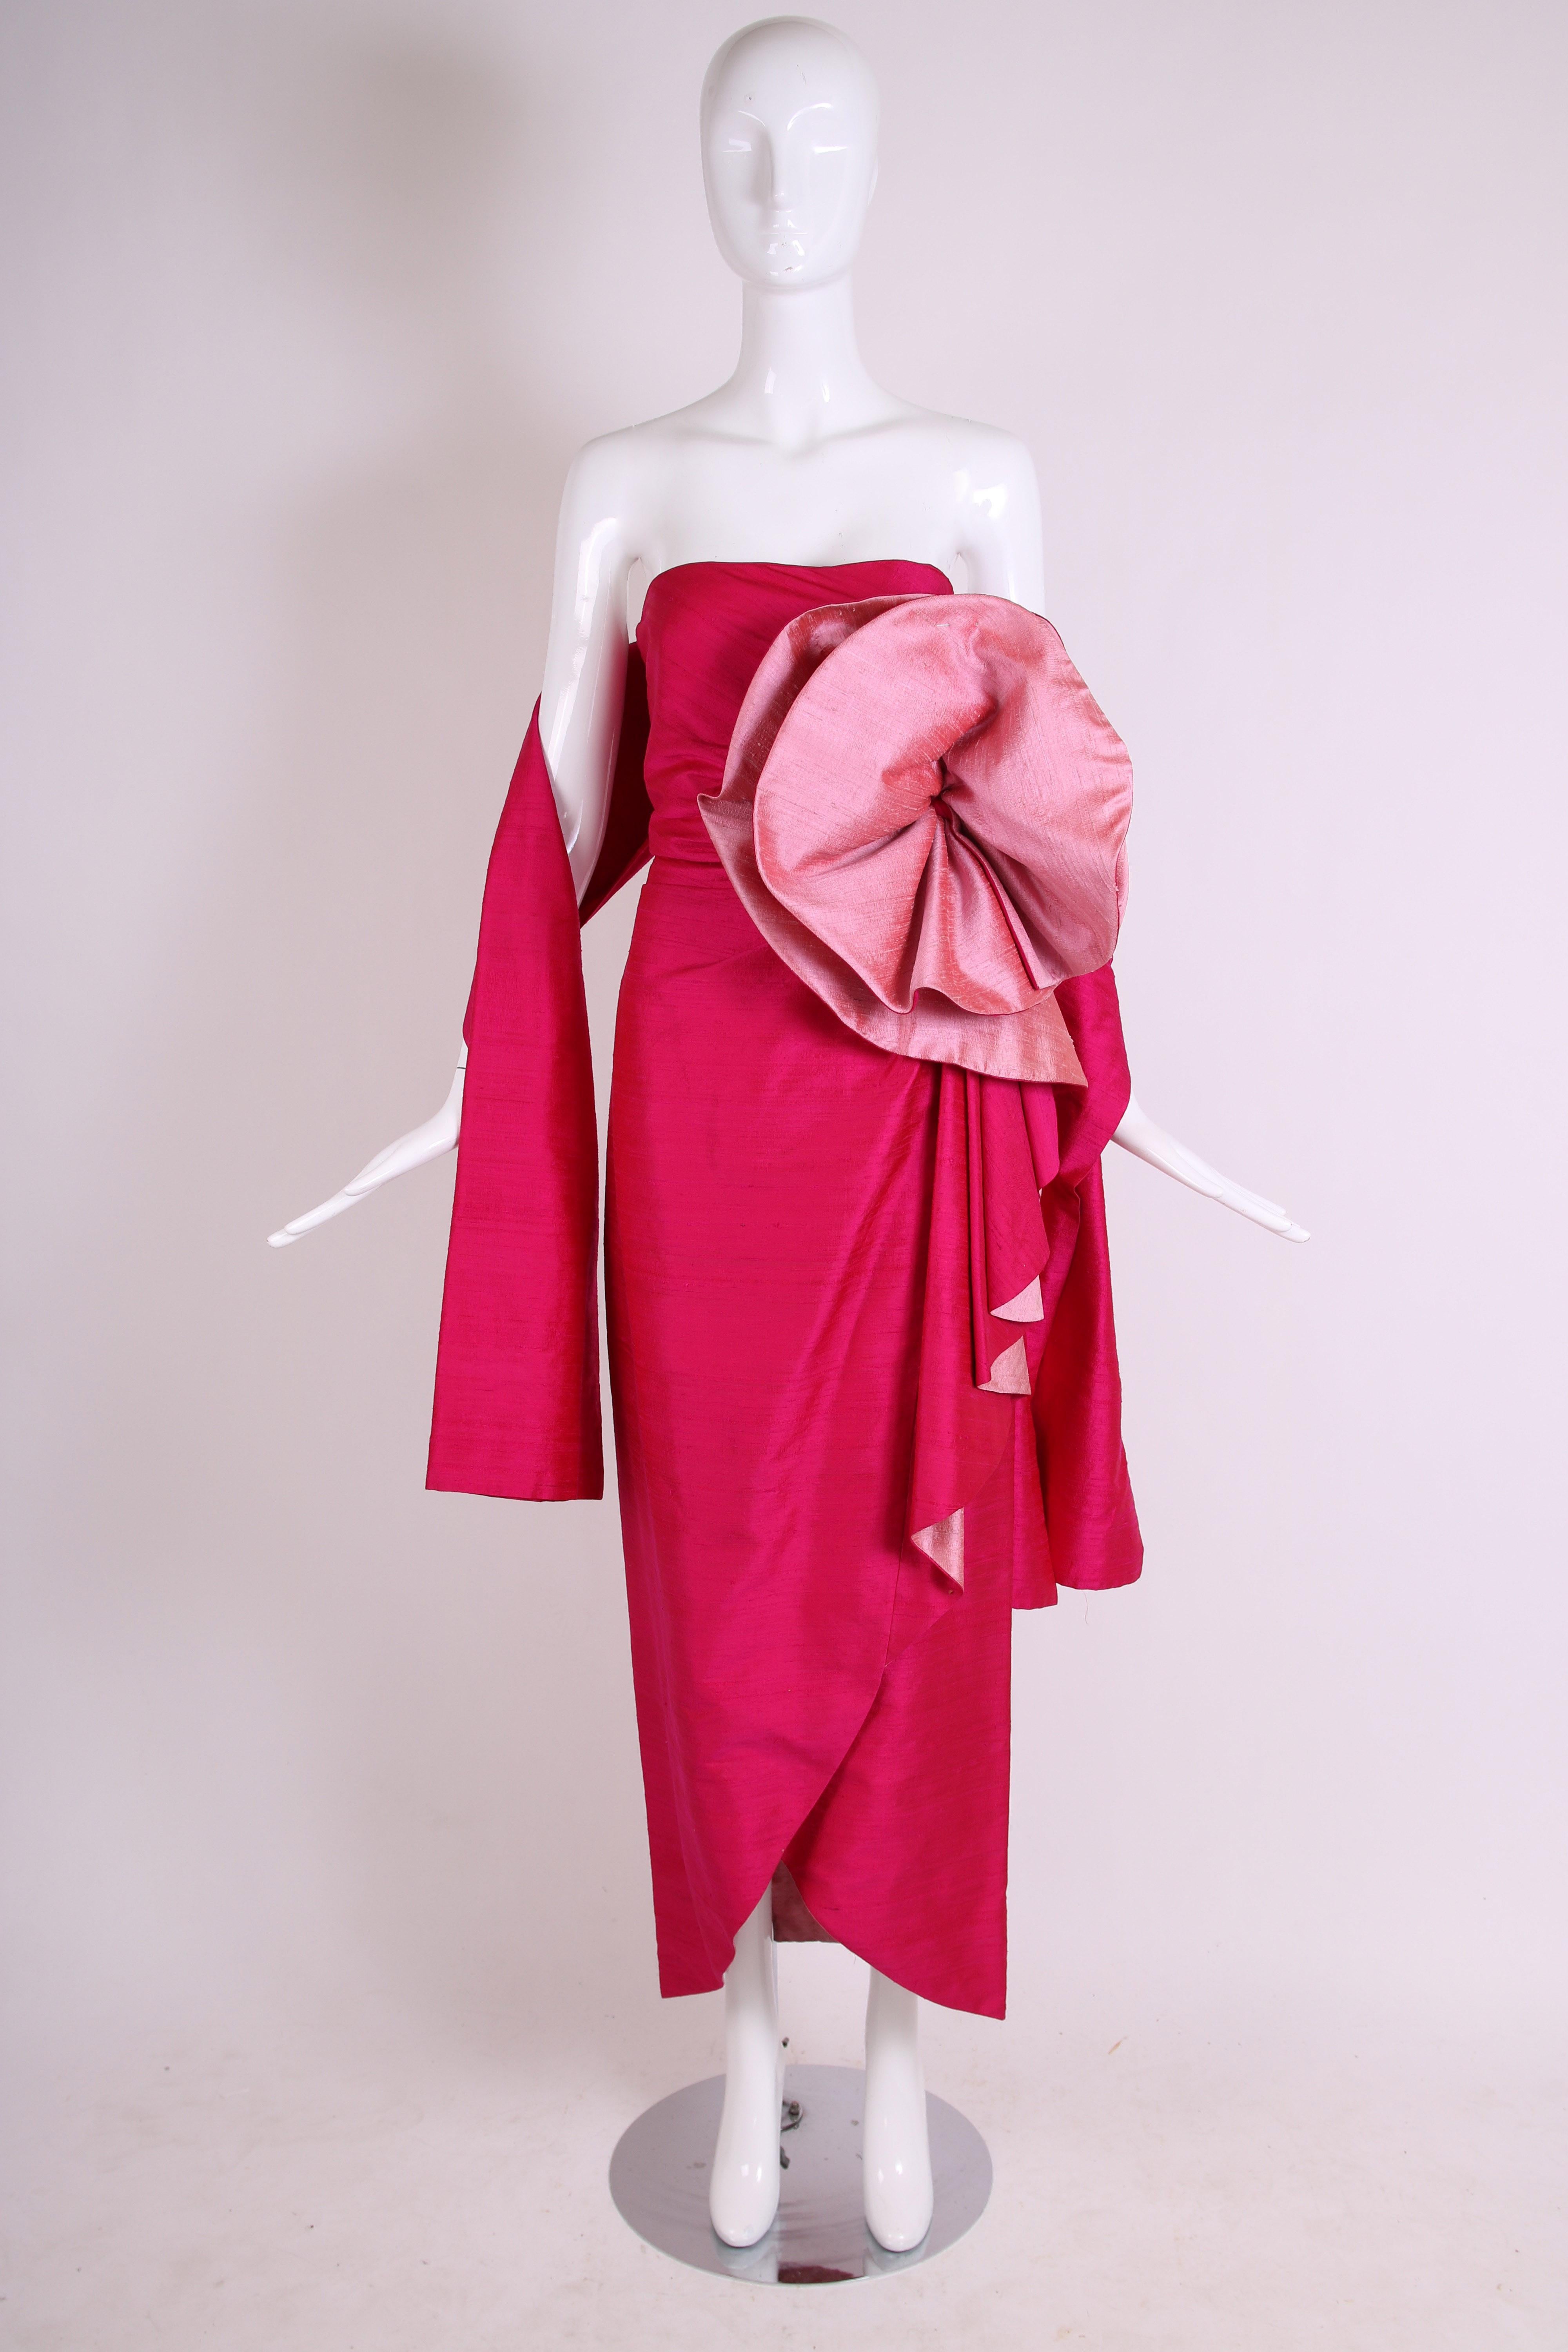 Ca. 1980 Roberto Capucci - Robe du soir sans bretelles en shantung de soie contrastée fuchsia et rose pâle, ornée d'une rosette surdimensionnée et sculpturale au niveau du buste, d'un ourlet pétale, d'une jupe portefeuille et d'un châle assorti. Se